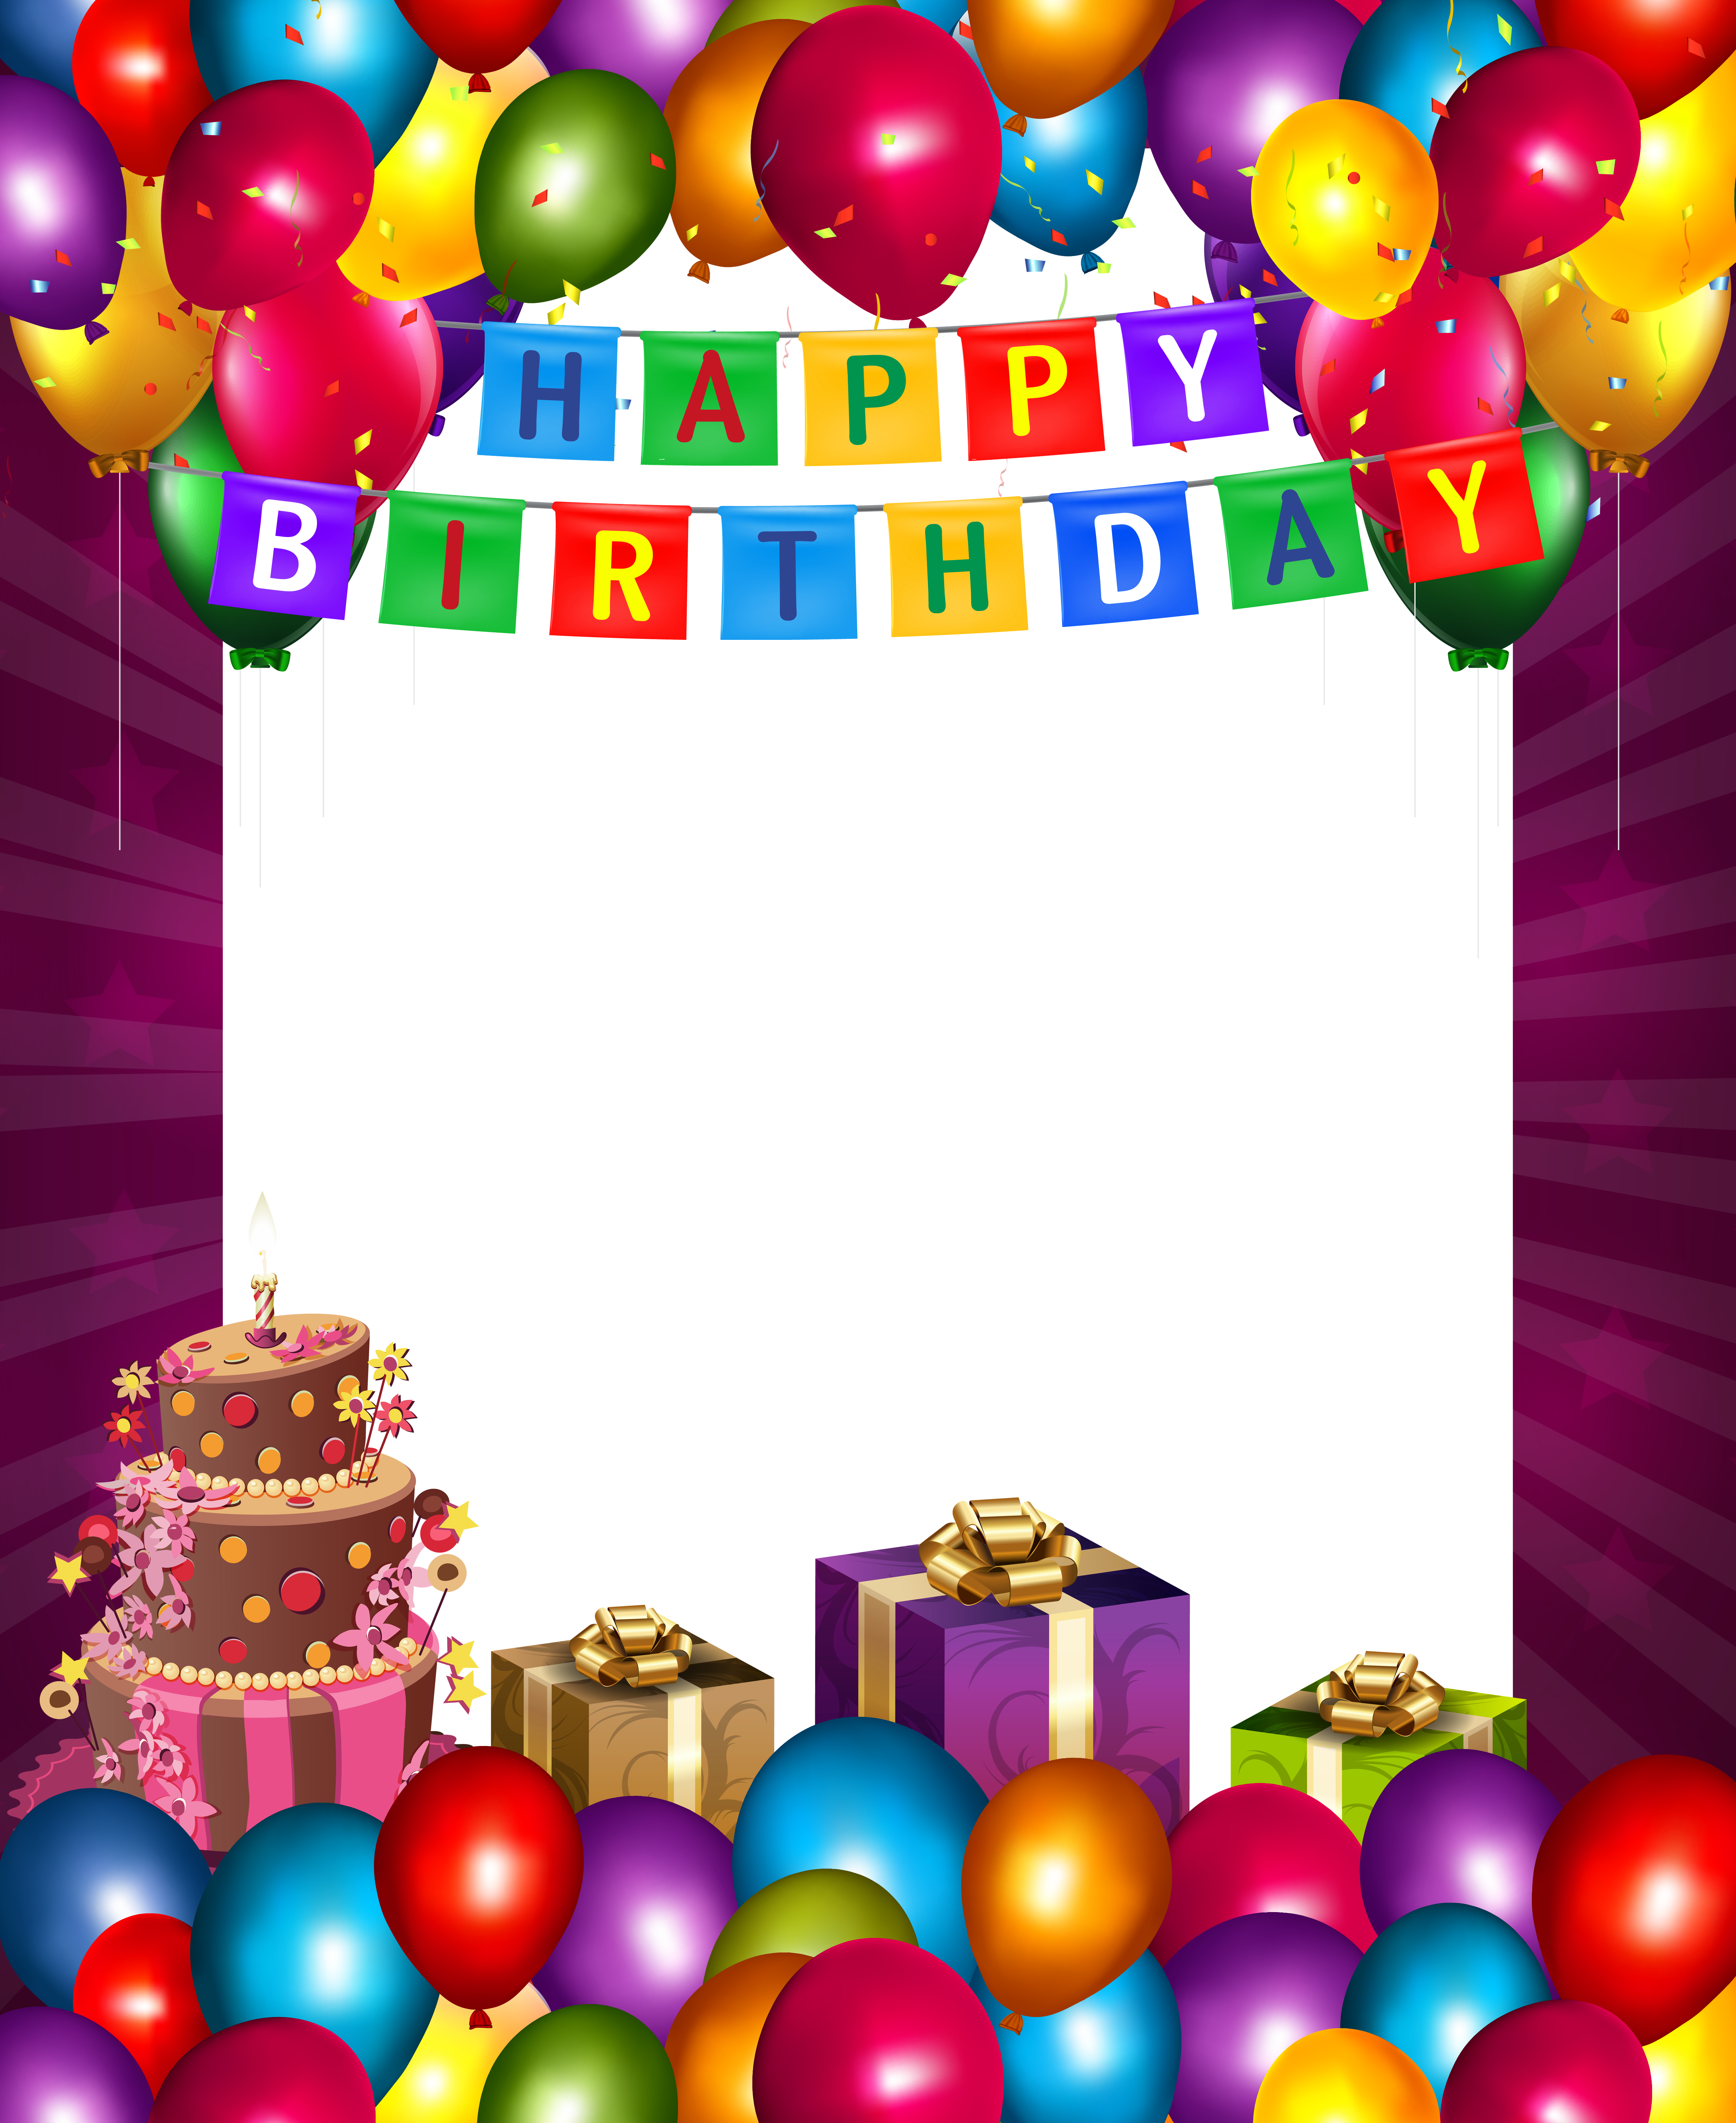 Birthday Photo Frame, Happy Birthday Photos, Birthday - Happy Birthday Frame Png (5111x6251), Png Download